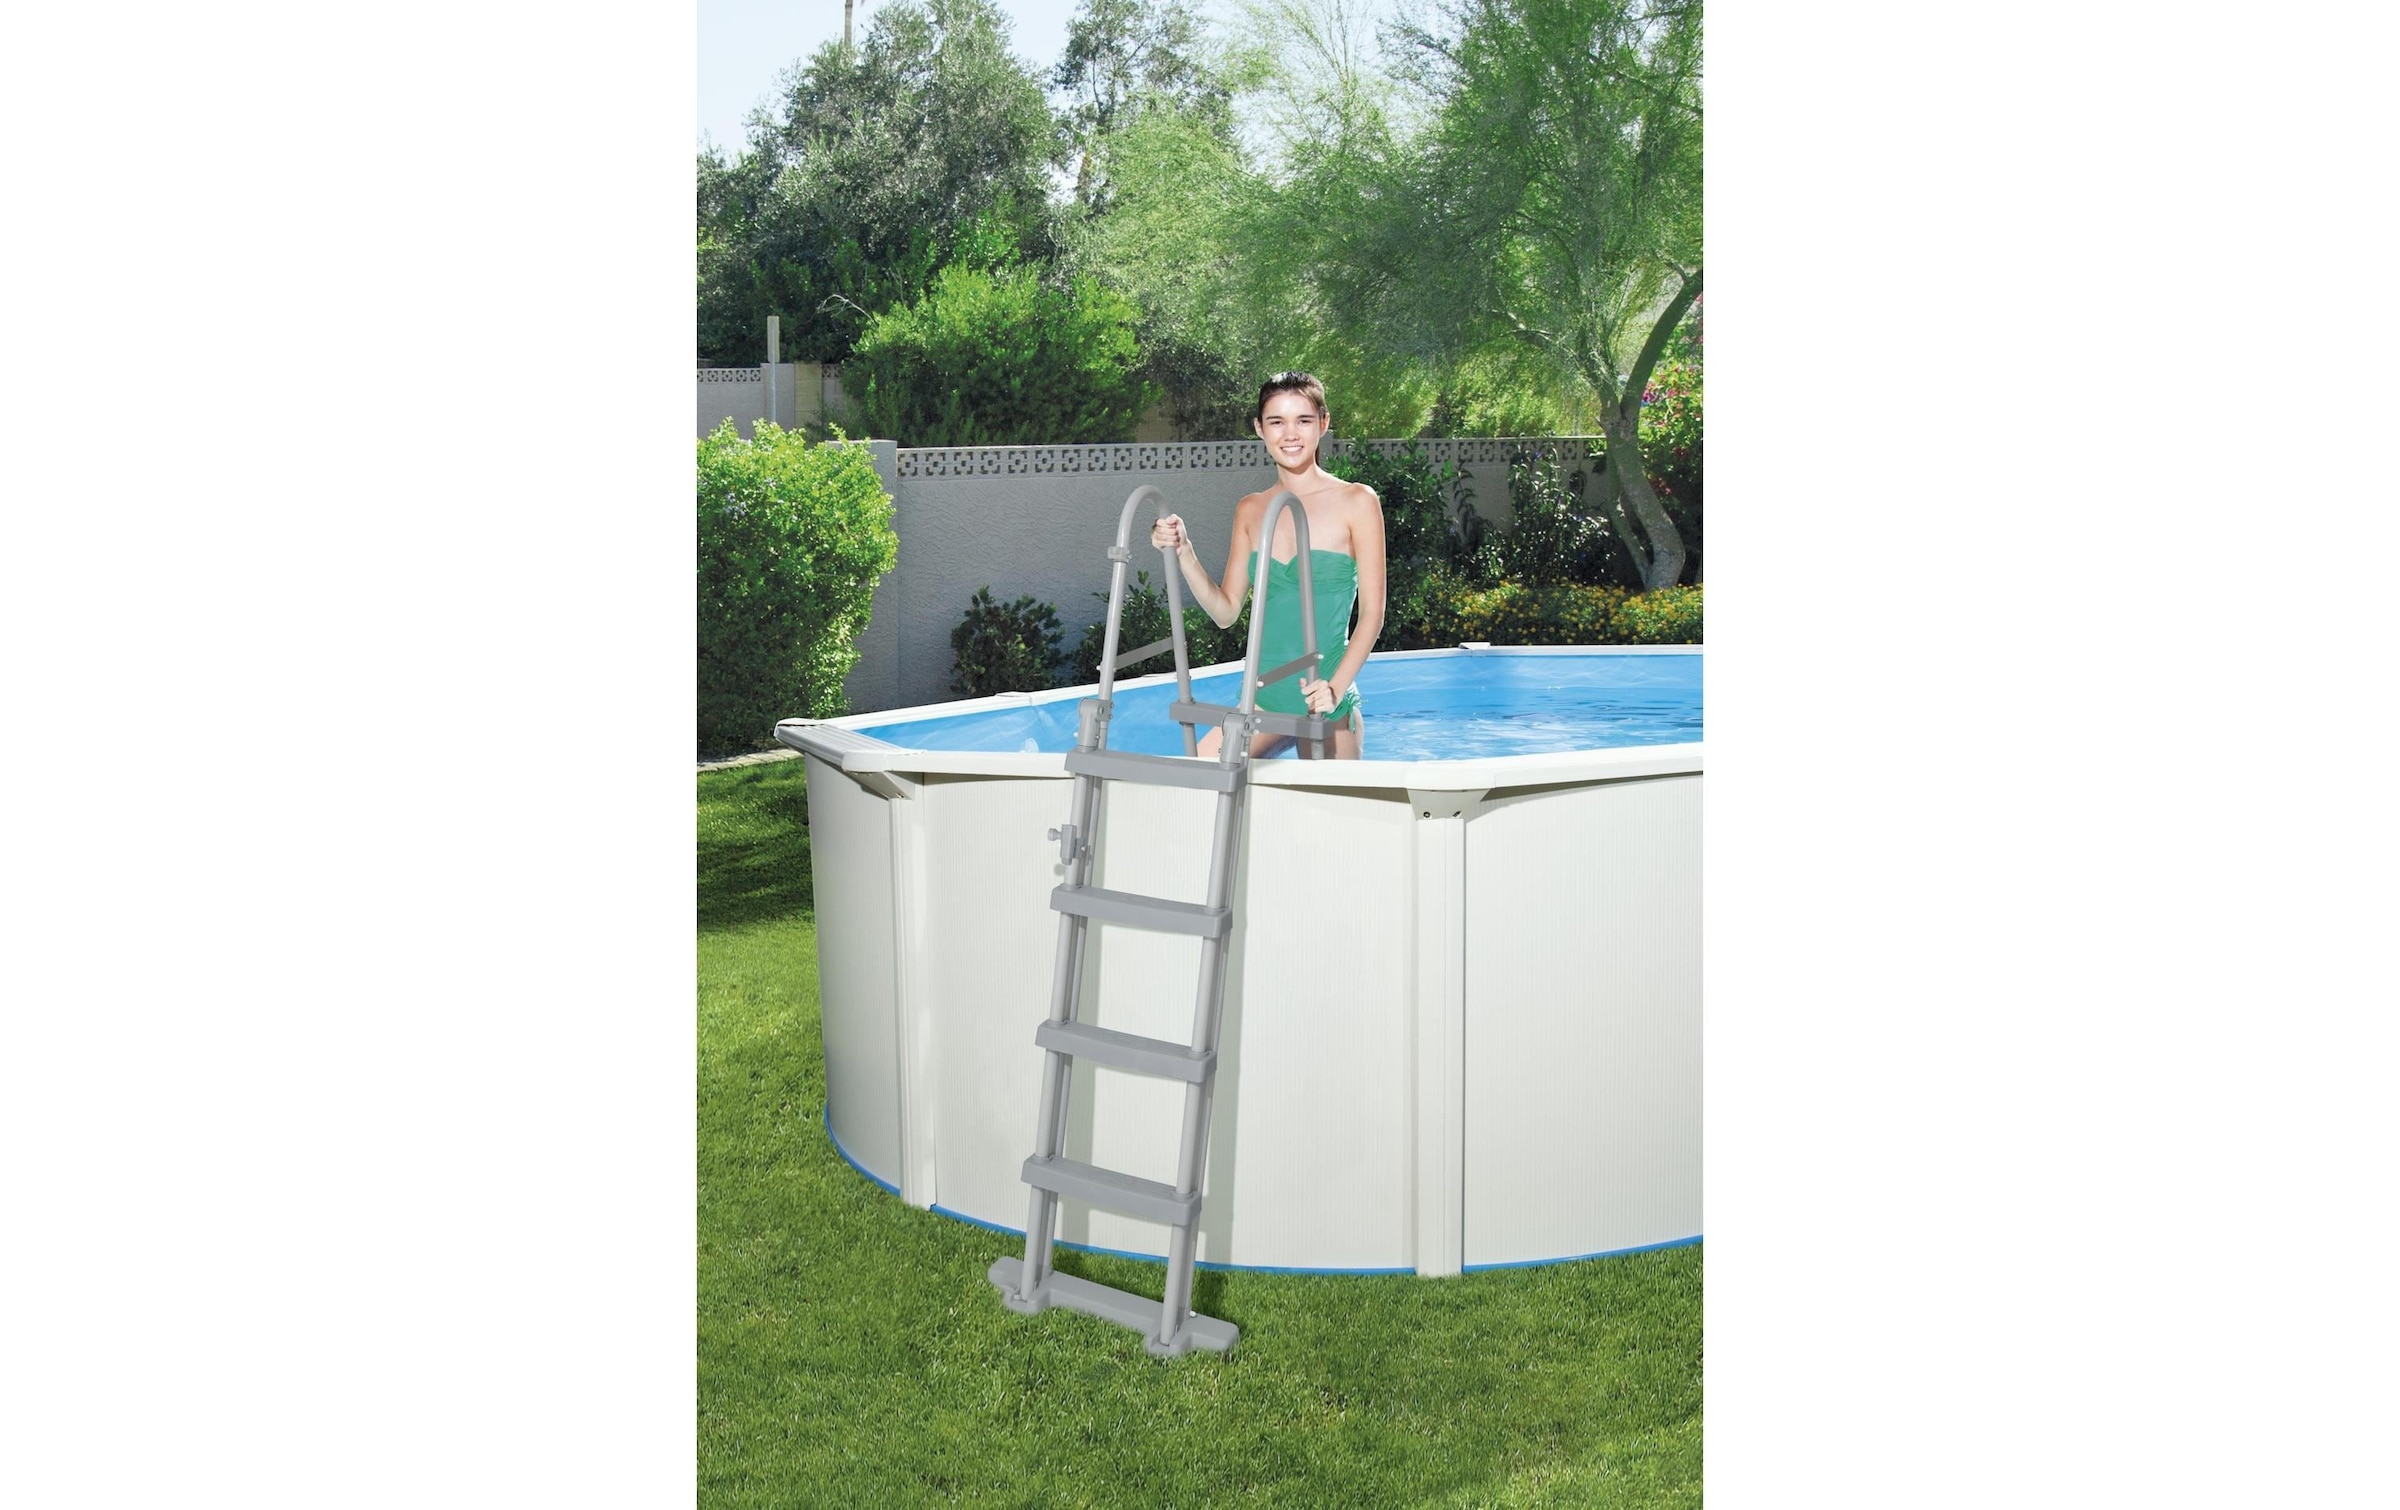 Bestway Pool »Hydrium 500 x 366 x 122 cm«